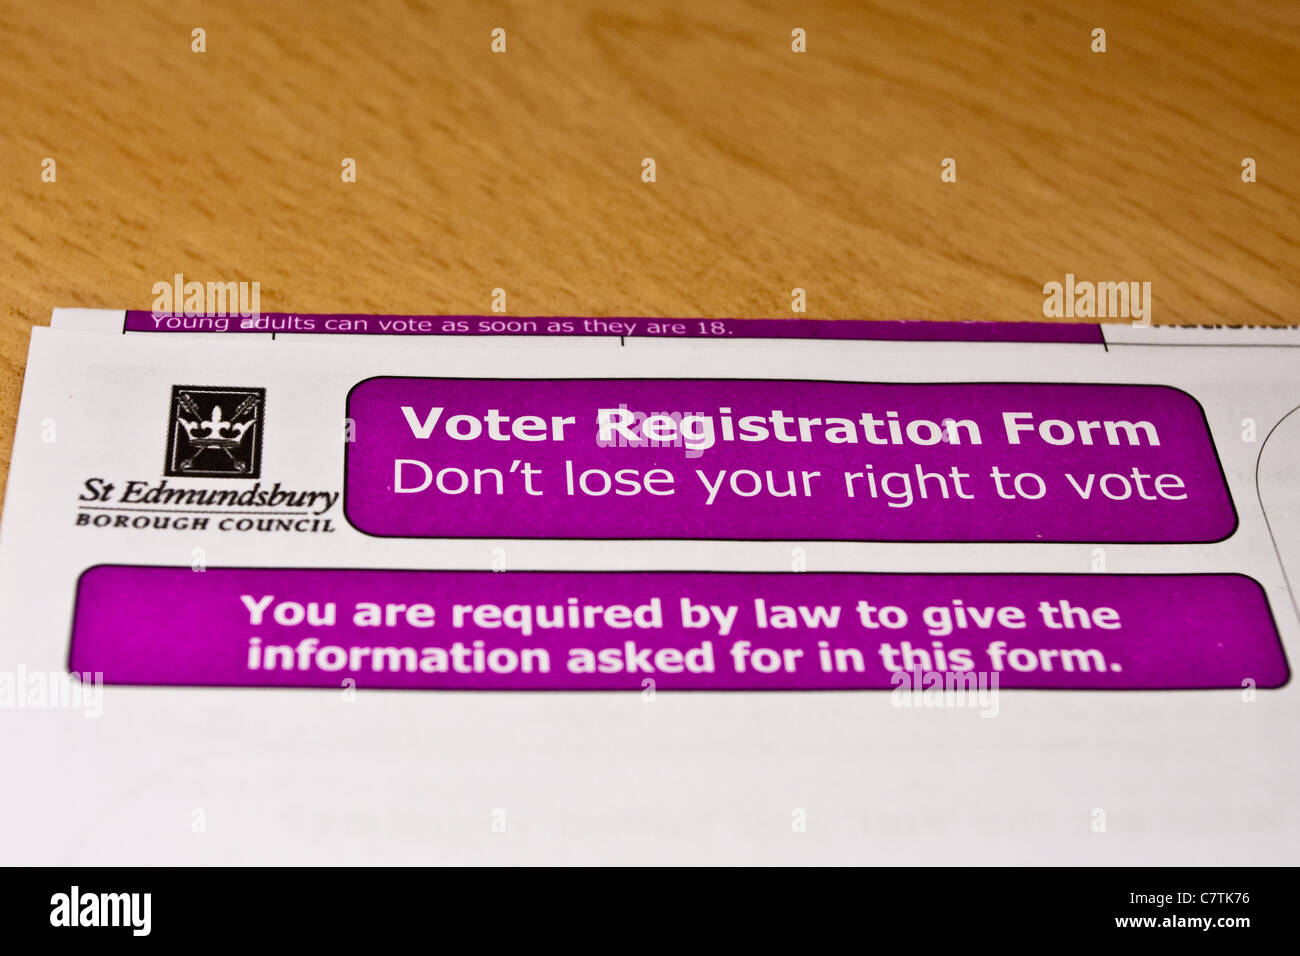 Voter registration form for the electoral register in Bury St Edmunds, UK Stock Photo